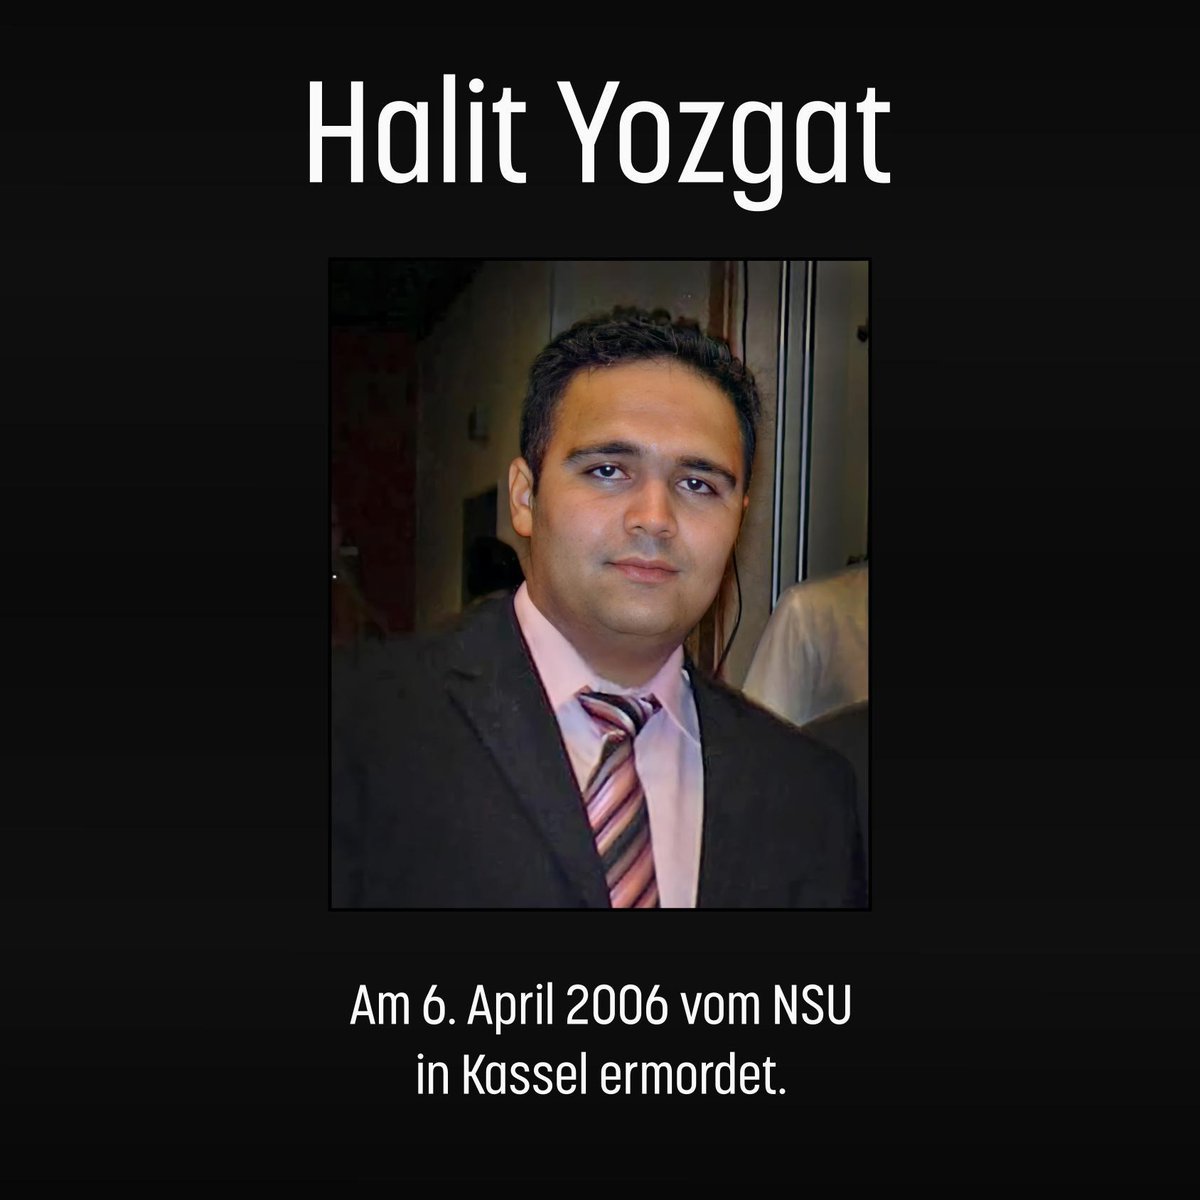 Wir gedenken: Heute vor 18 Jahren, am 6. April 2006, wurde Halit Yozgat in seinem Internetcafé in #Kassel vom #NSU ermordet. Er wurde 21 Jahre alt. Seine Familie kämpft bis heute um Aufklärung und Anerkennung. Gedenken heute 15:00, Halitplatz. #KeinSchlussstrich #KeinVergessen